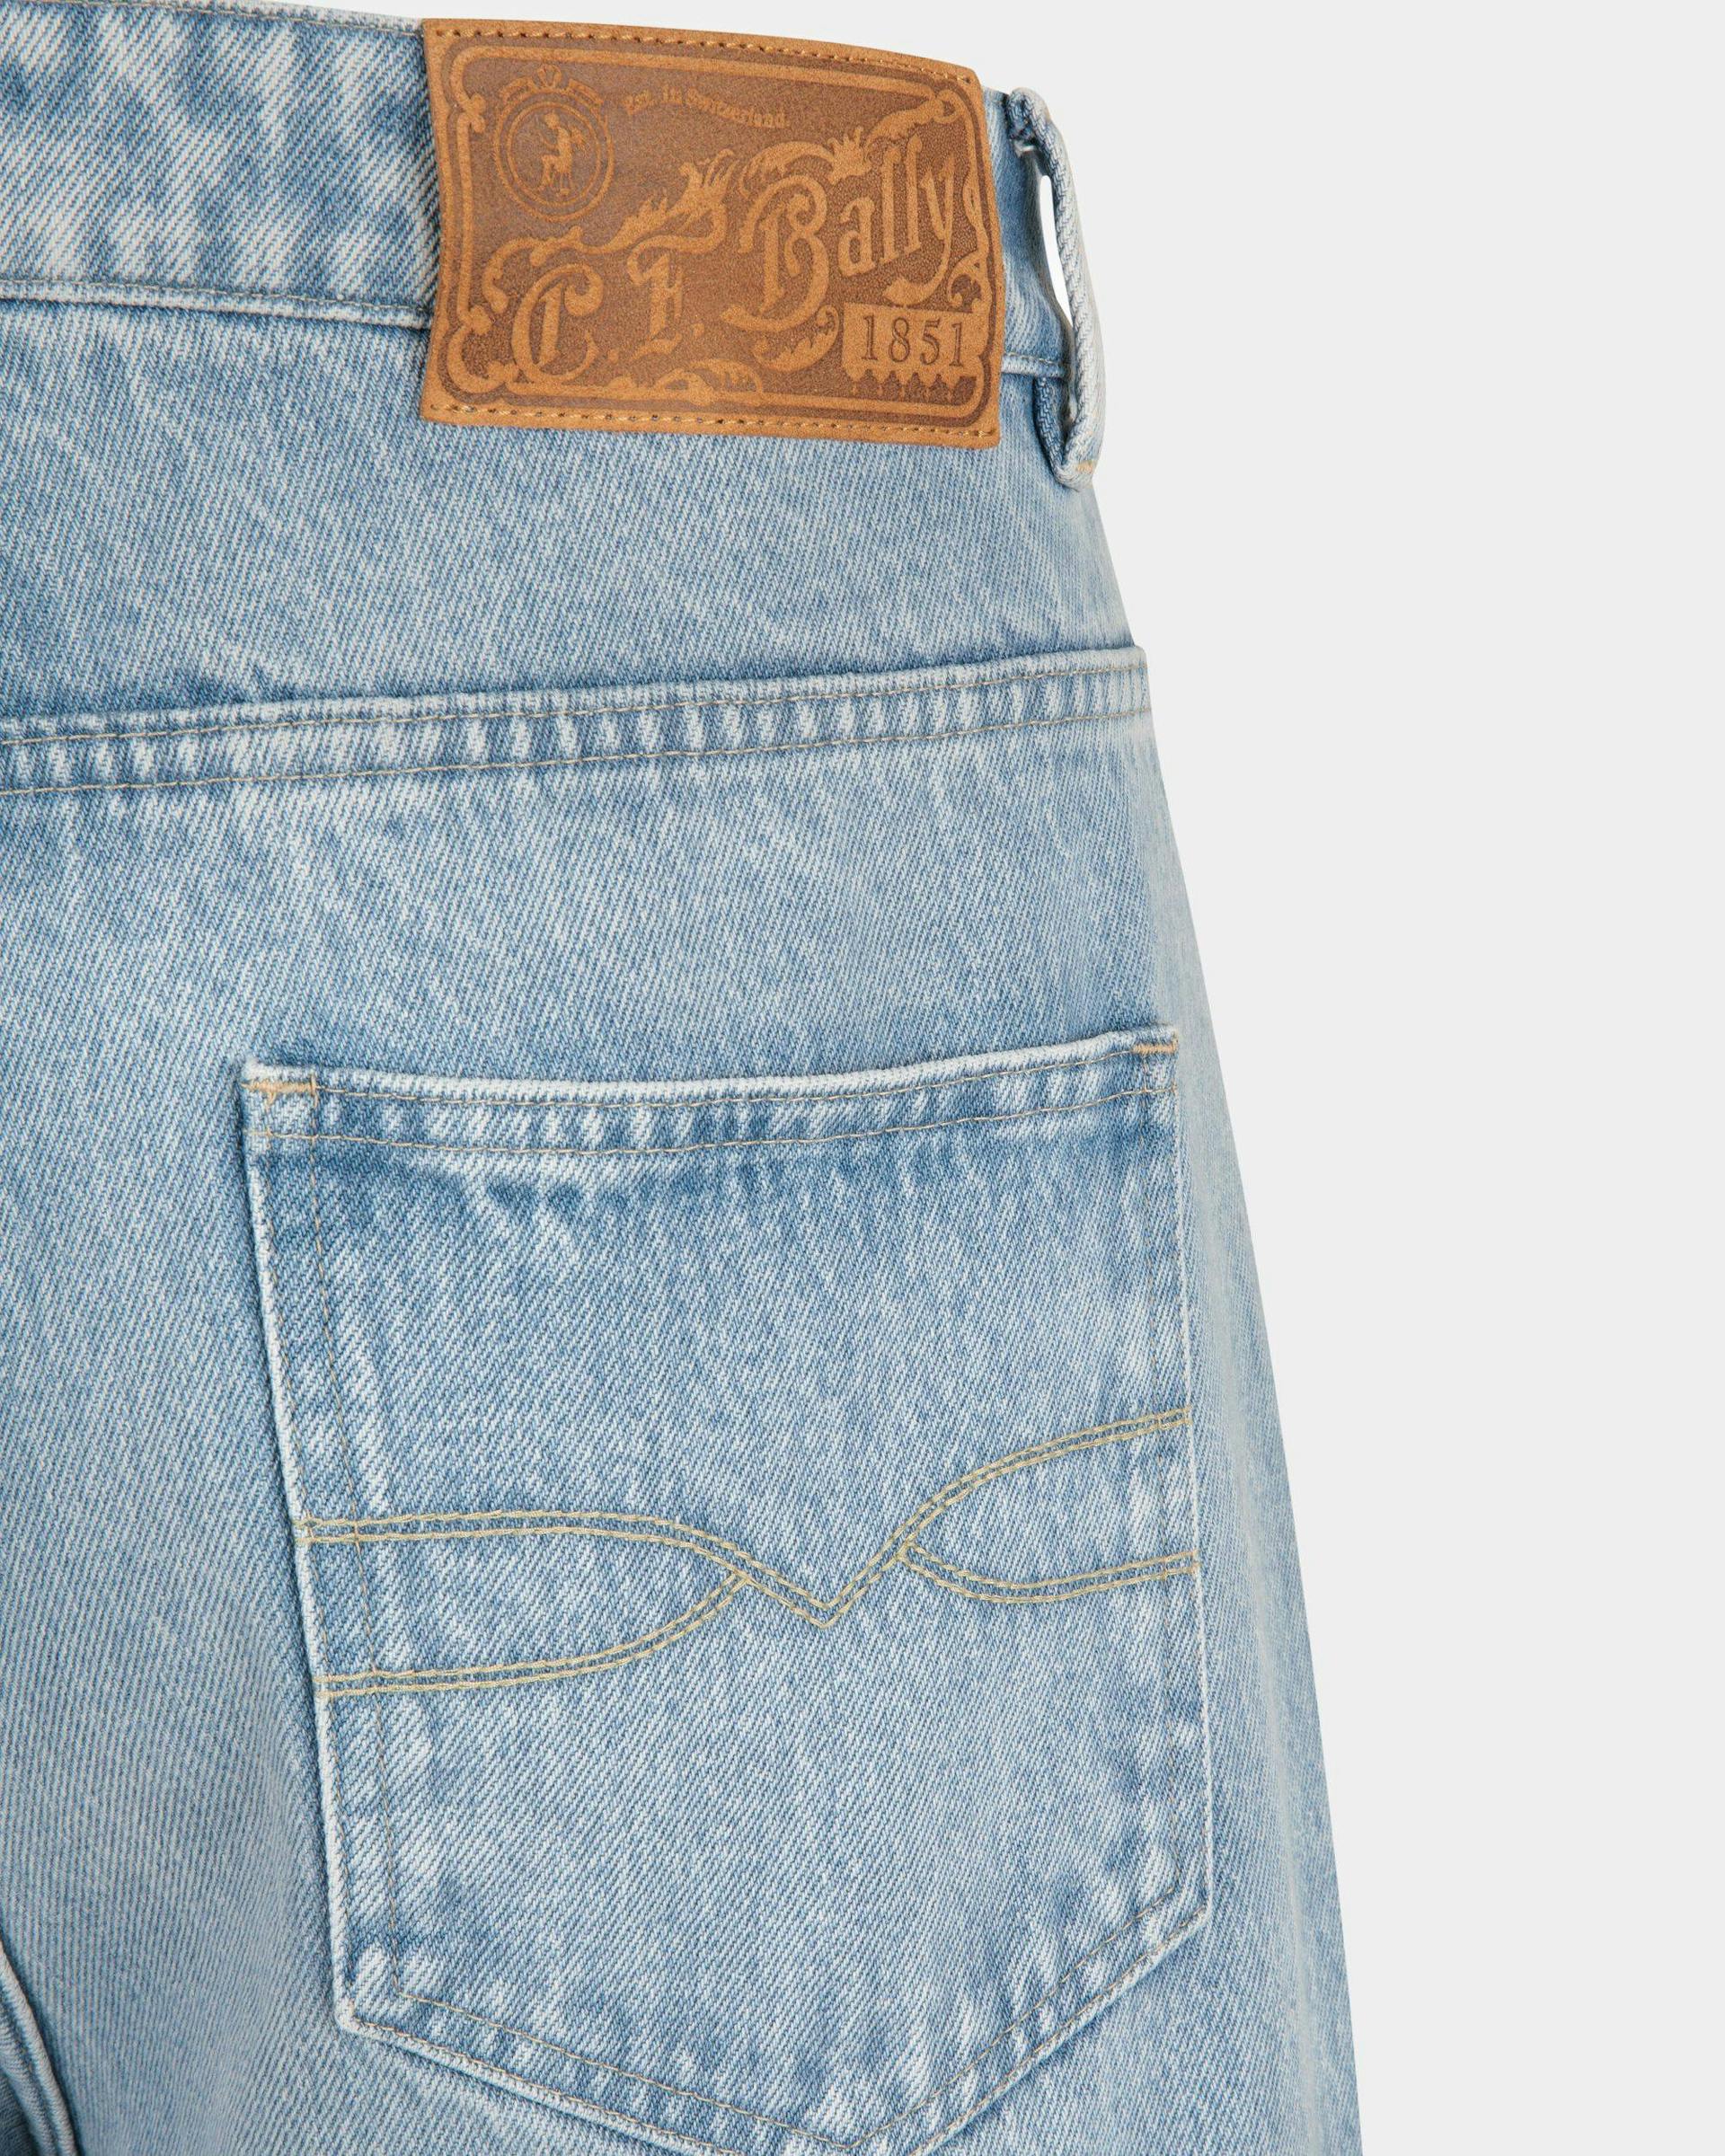 Men's Relaxed Denim Pants In Light Indigo Cotton | Bally | On Model Detail